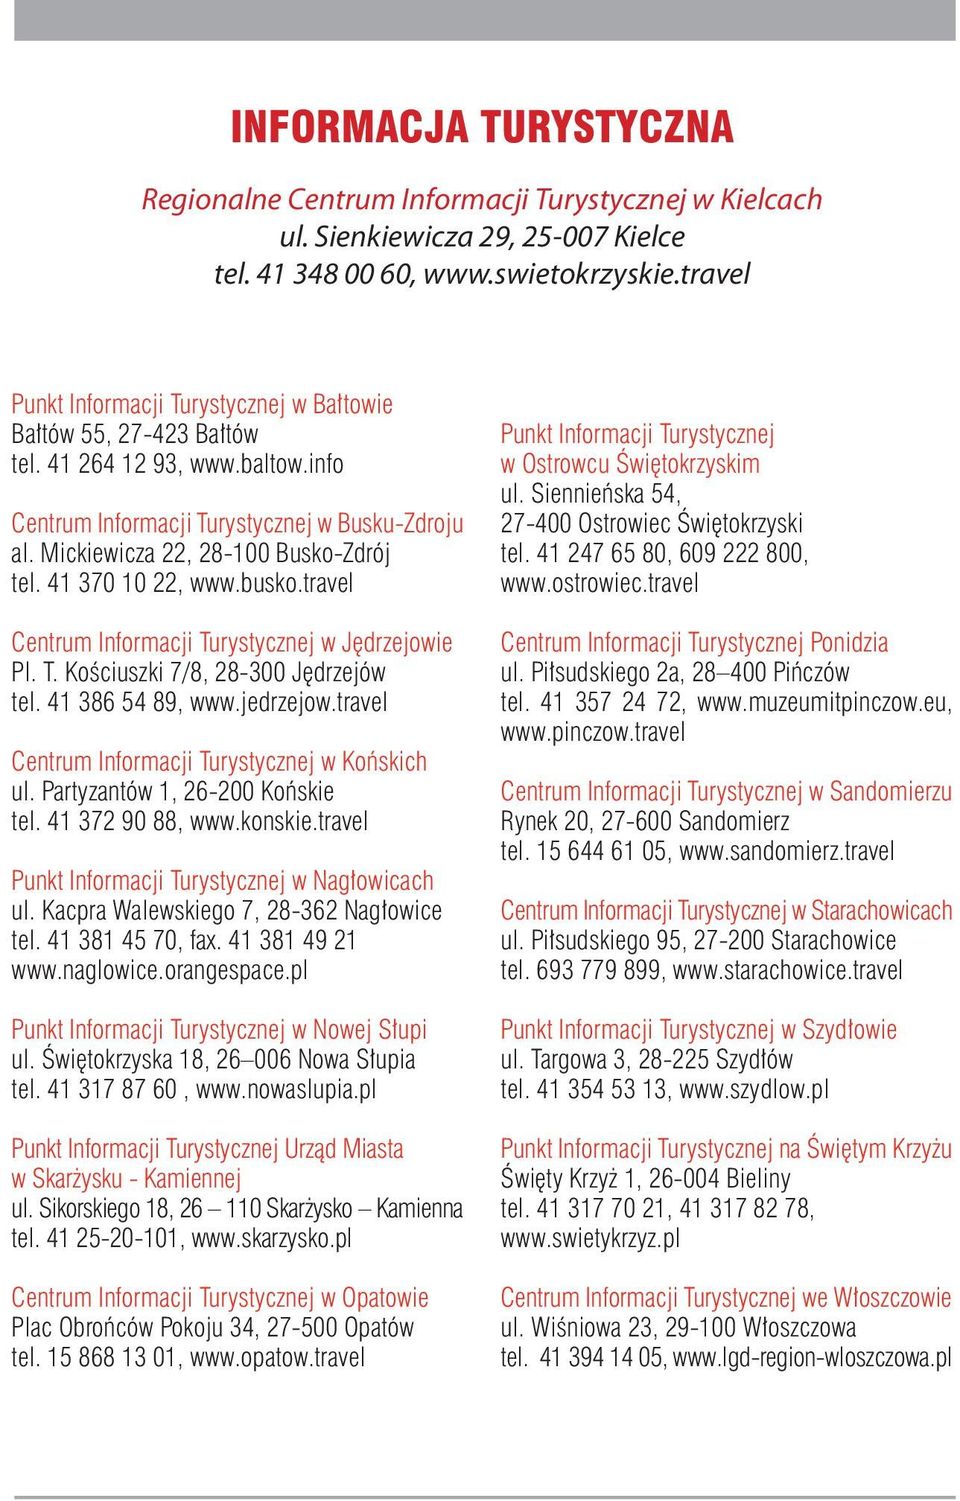 41 370 10 22, www.busko.travel Centrum Informacji Turystycznej w Jędrzejowie Pl. T. Kościuszki 7/8, 28-300 Jędrzejów tel. 41 386 54 89, www.jedrzejow.